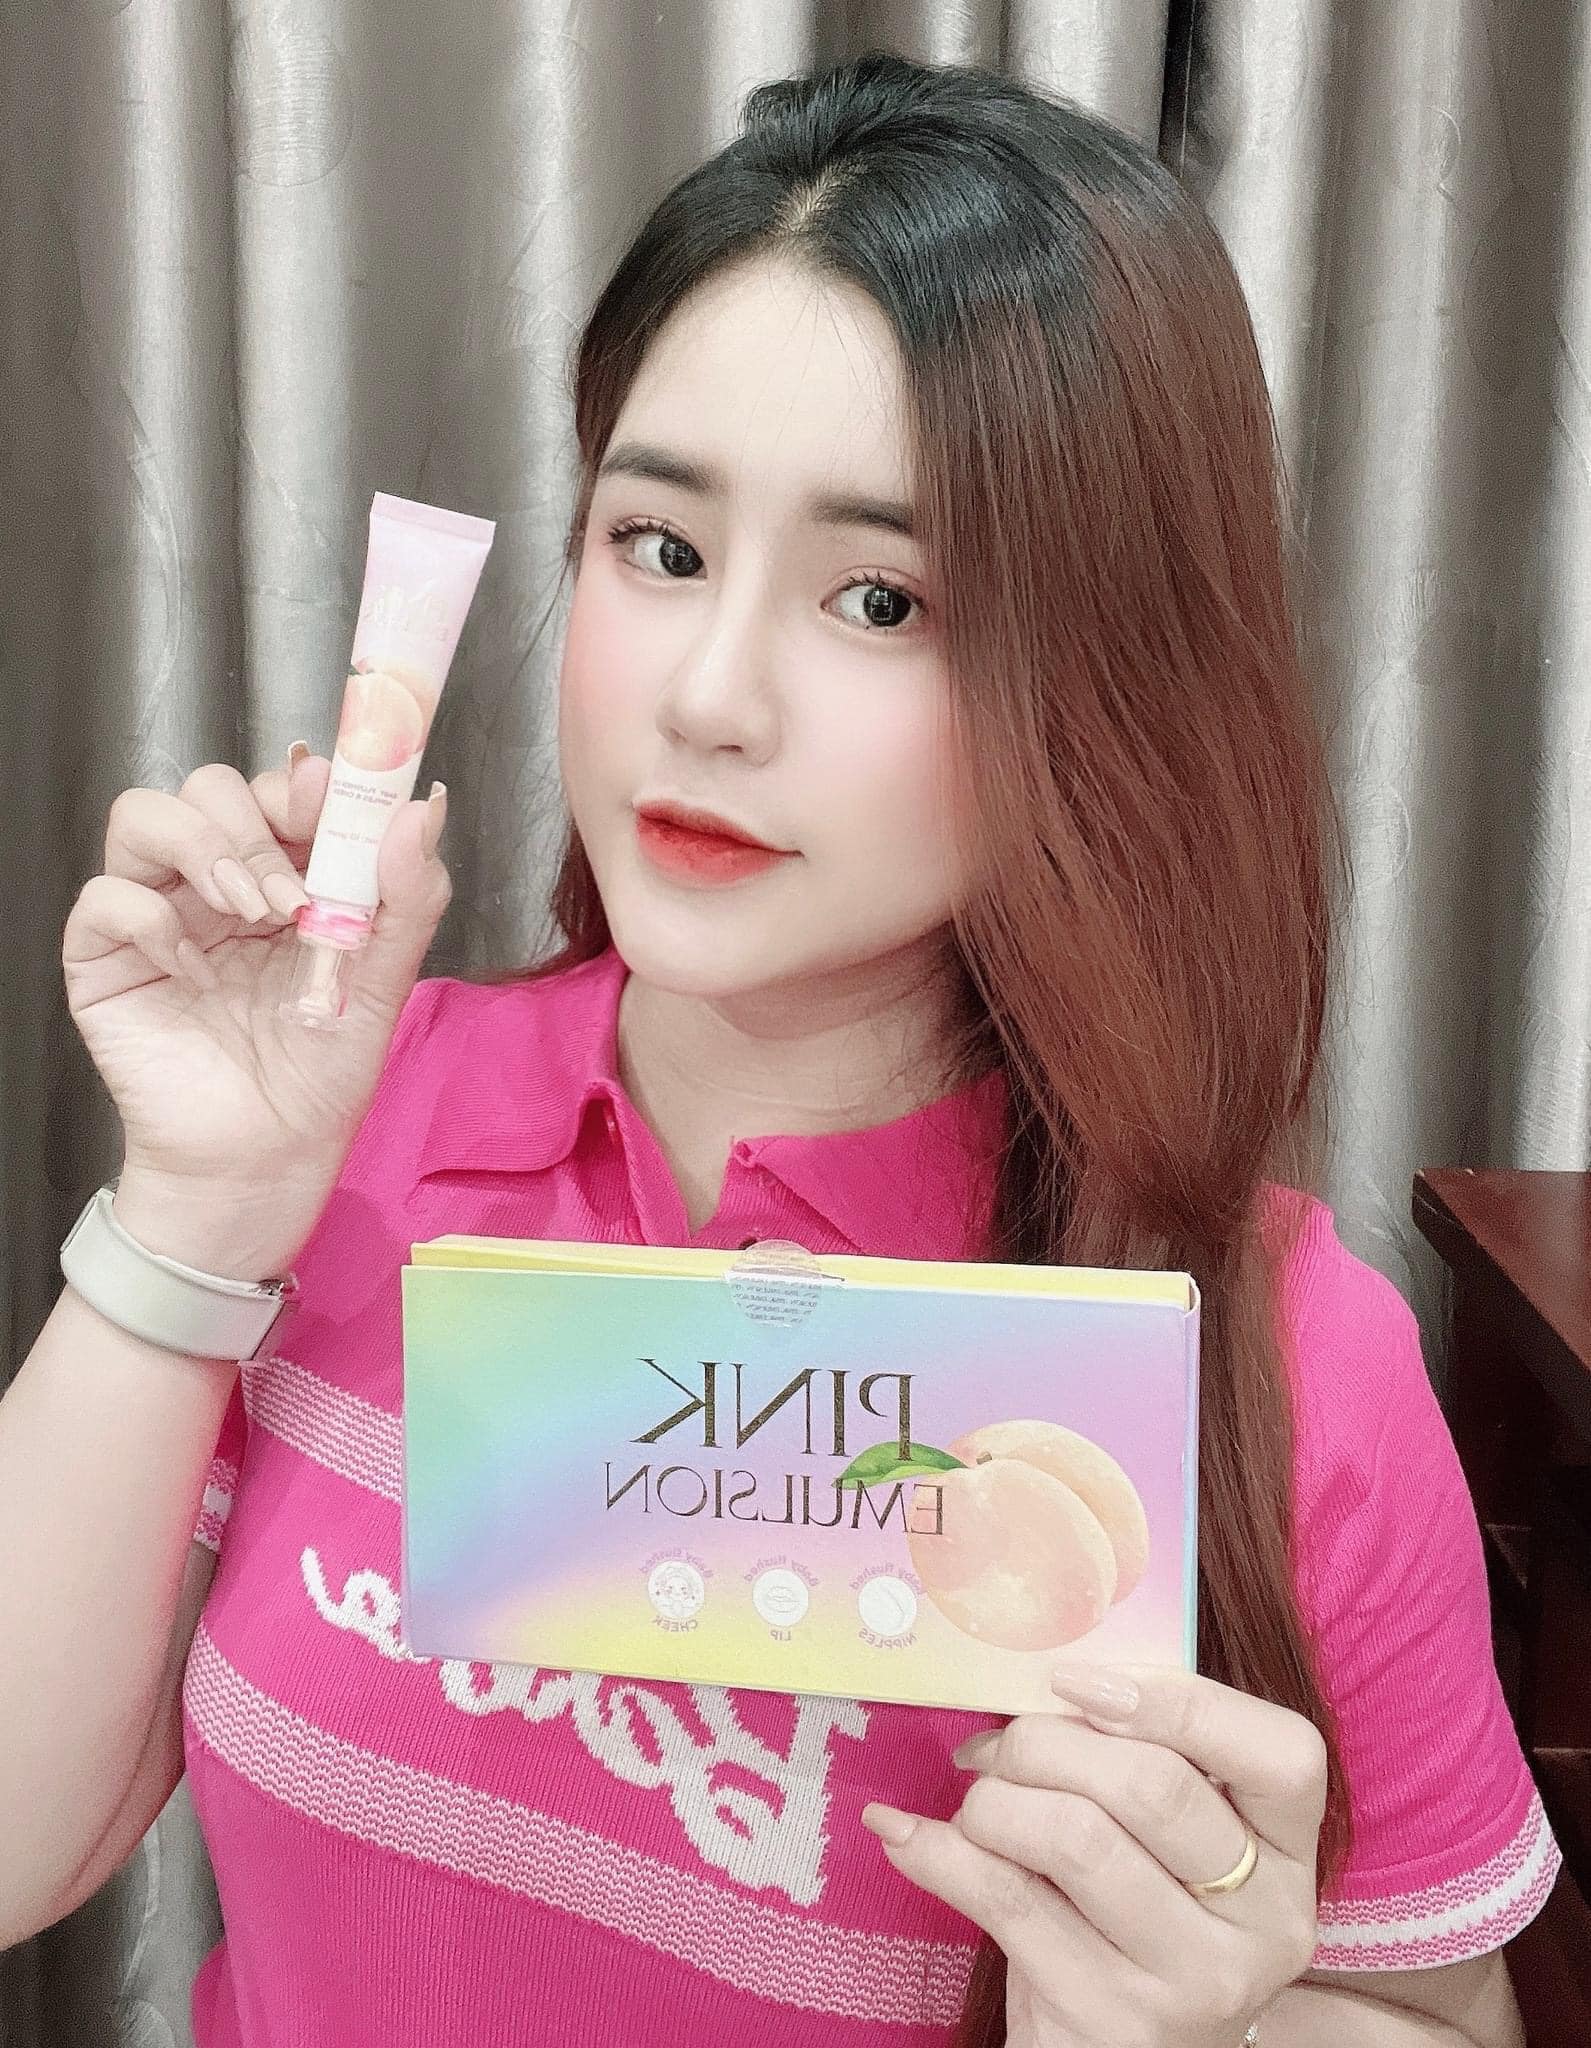 Kem Dưỡng Má Hồng Thanh Tô Cosmetics Pink Emulsion - MAHONG01